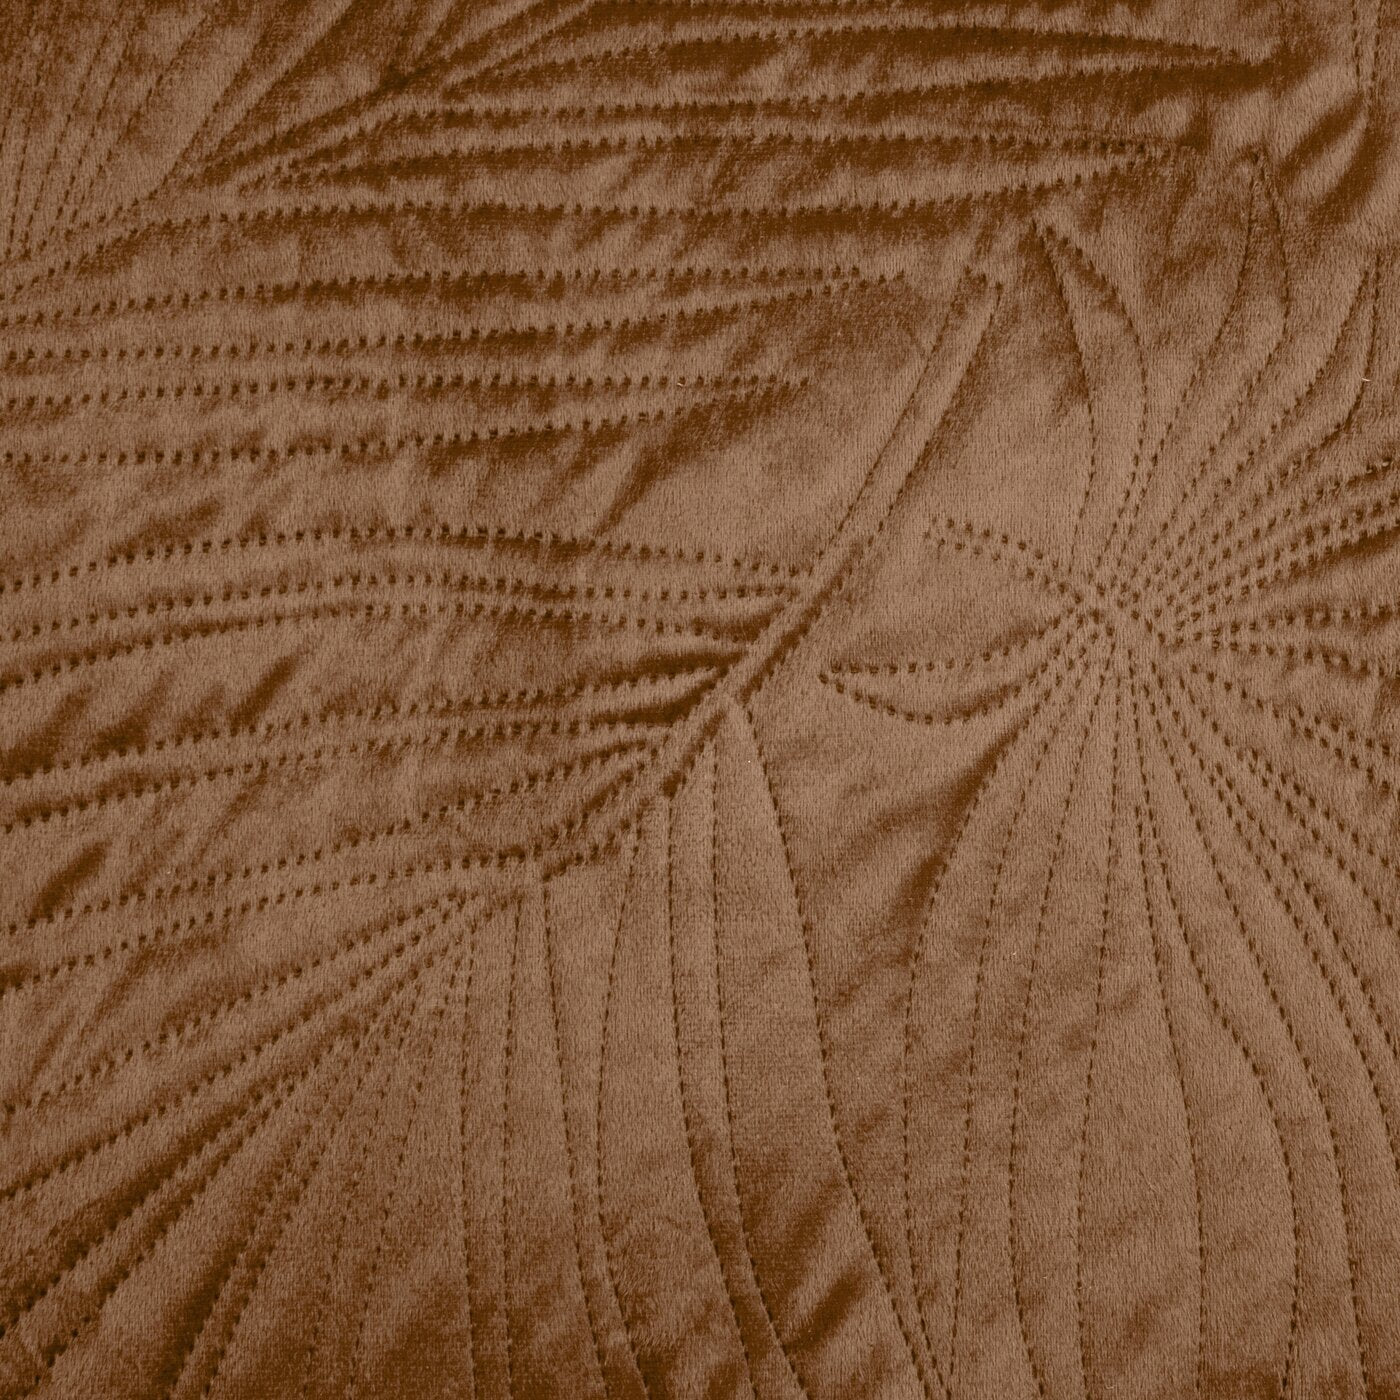 Cuvertură de pat din catifea, matlasată prin presare la cald cu model de frunze roșu cărămidă LUIZ Perdele de Poveste